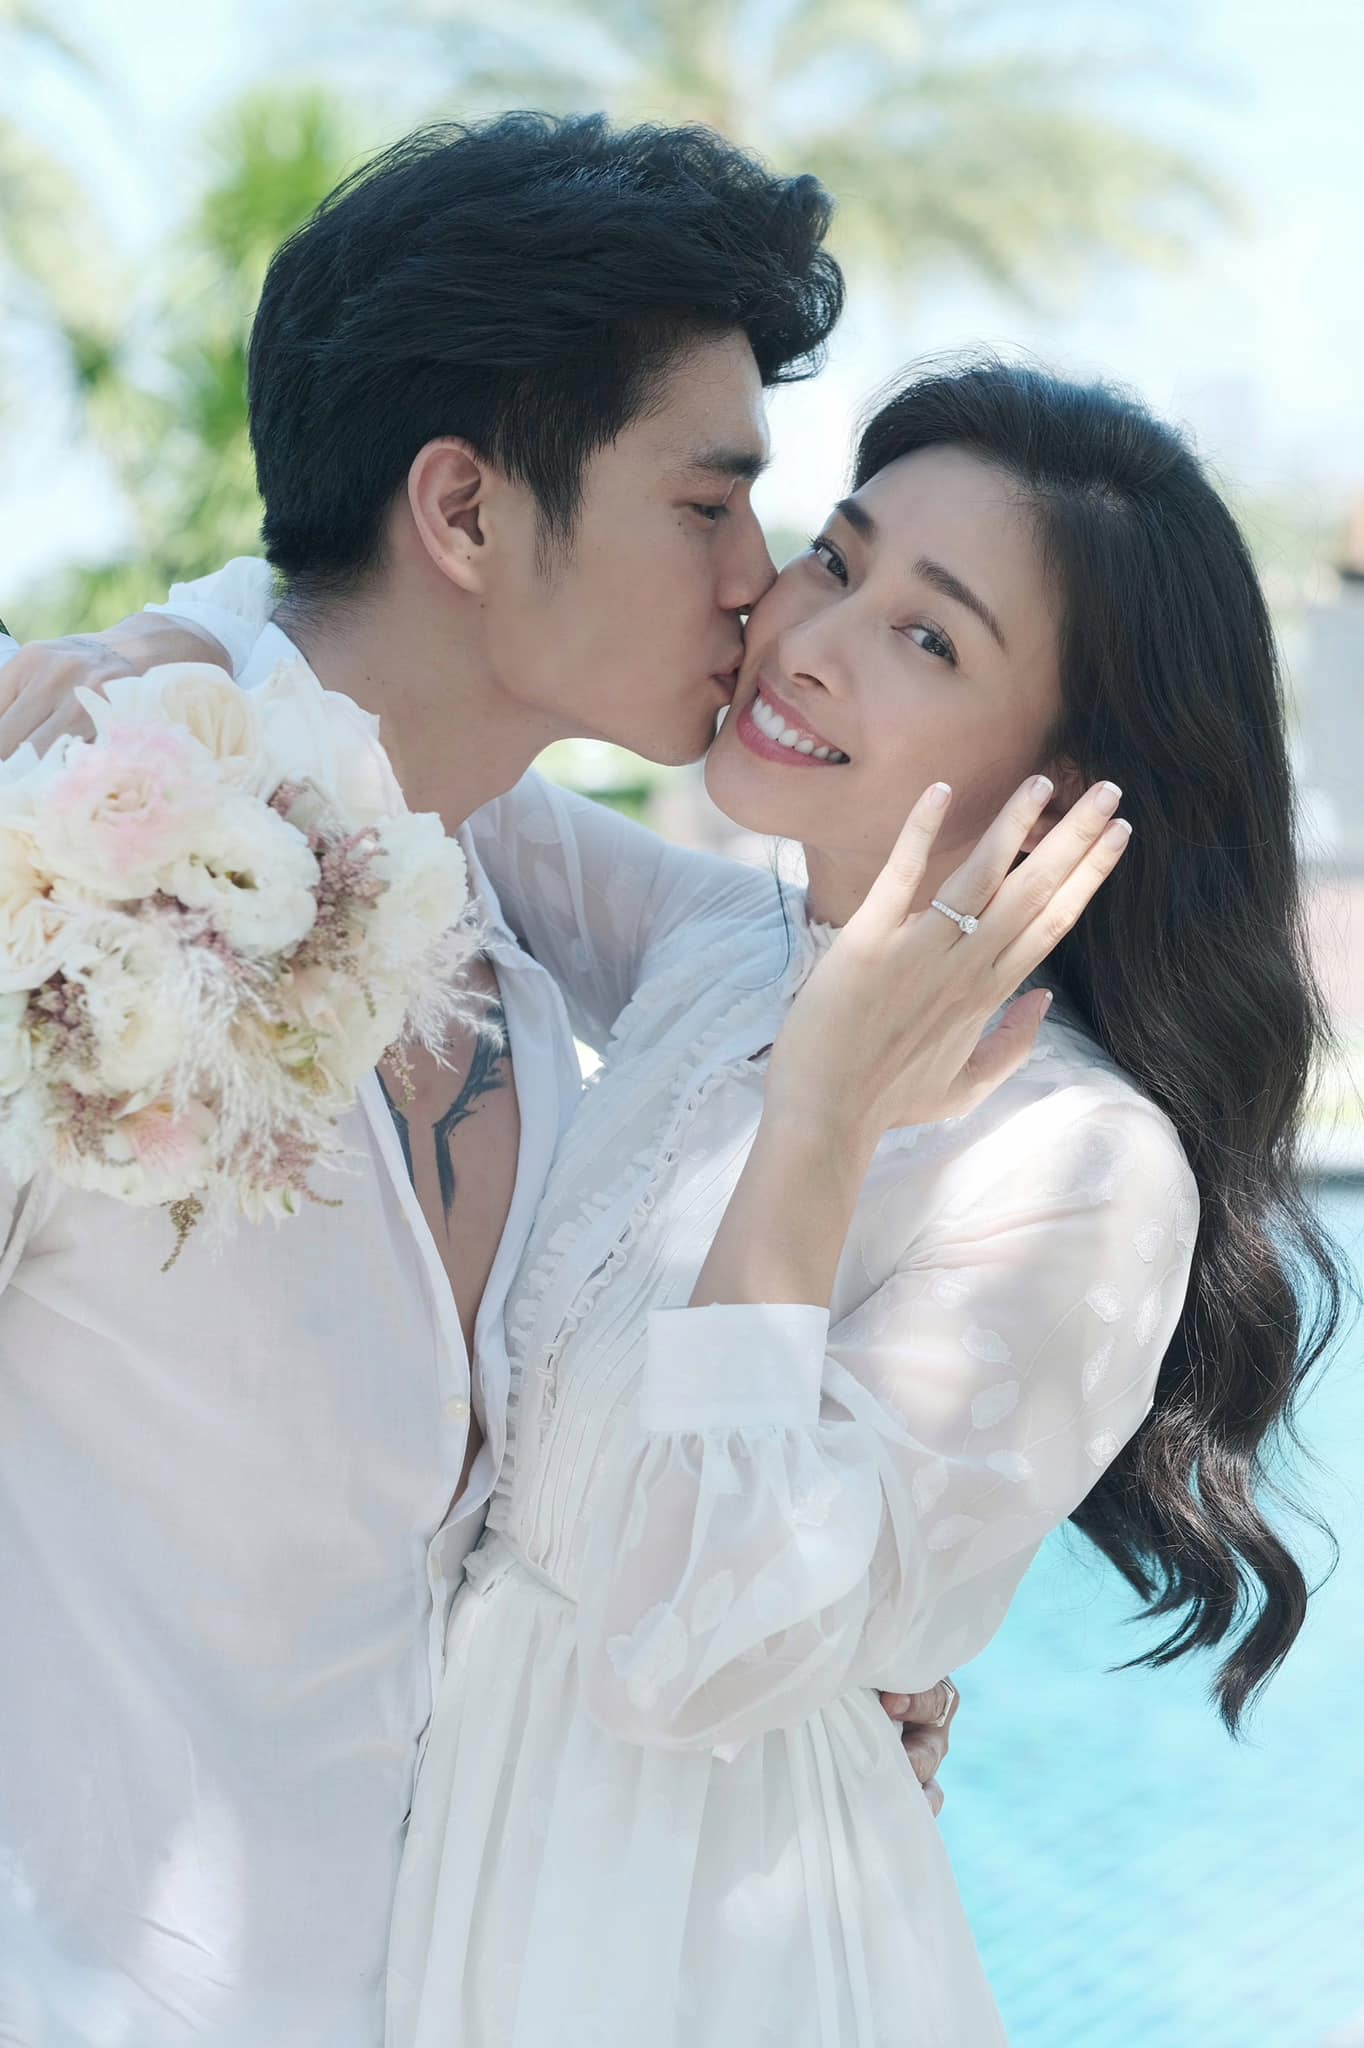 Ngô Thanh Vân và chồng trẻ chính trẻ chính thức công bố ảnh cưới - Ảnh 5.